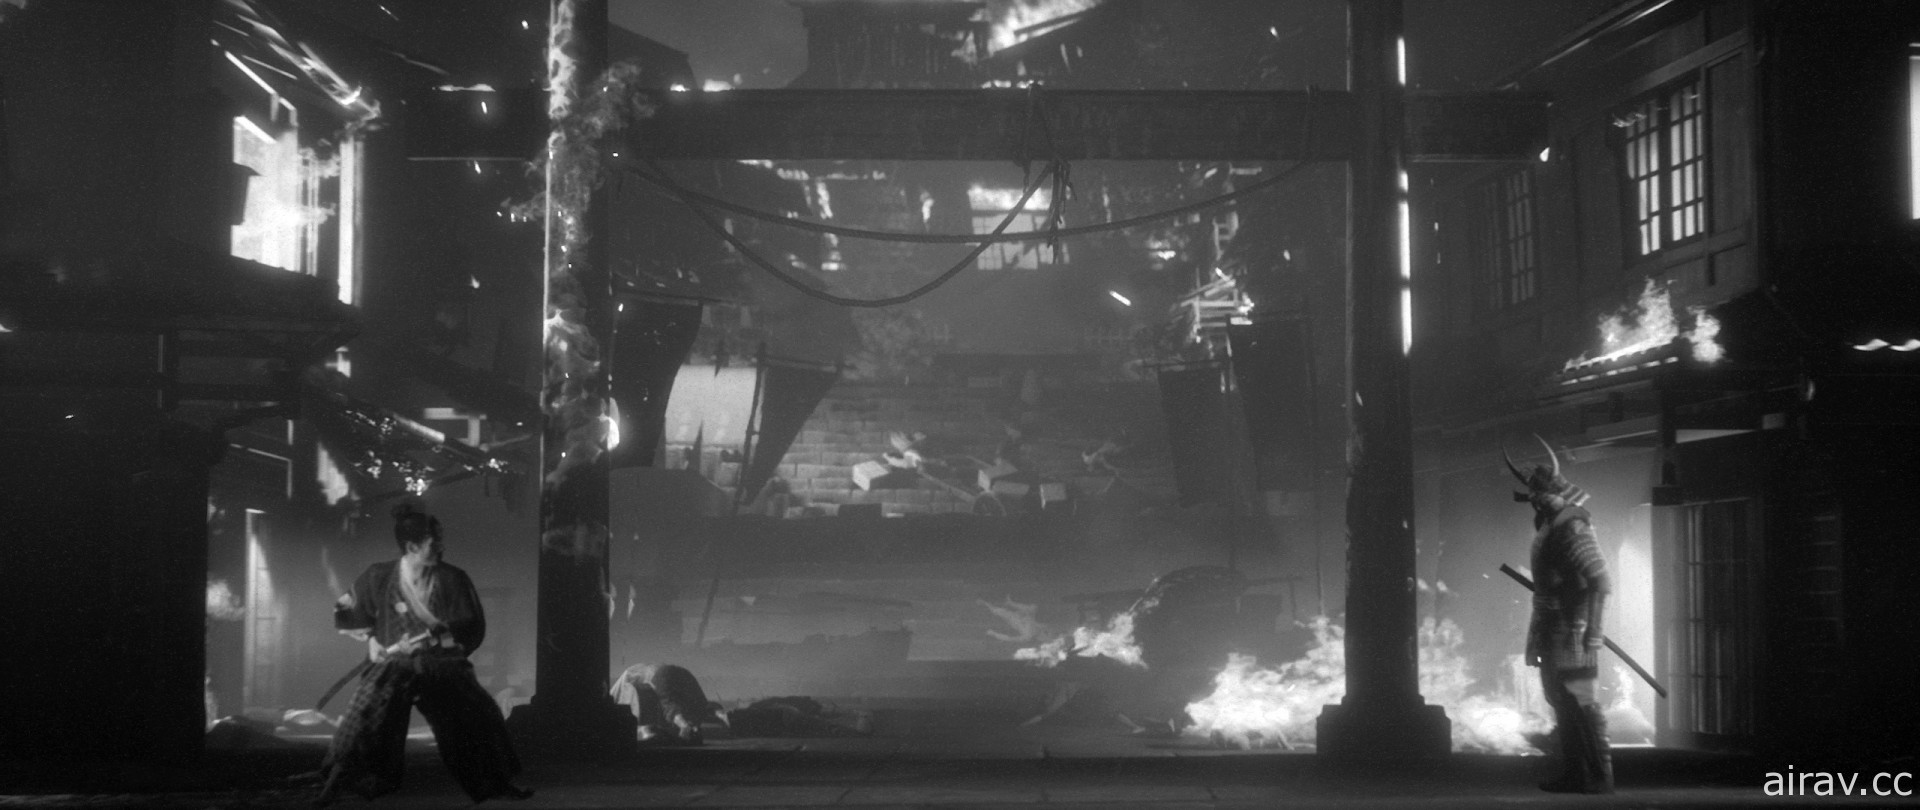 黑白武士電影動作遊戲《幽冥旅程》釋出實機預告片 展現封建時期的日本風情